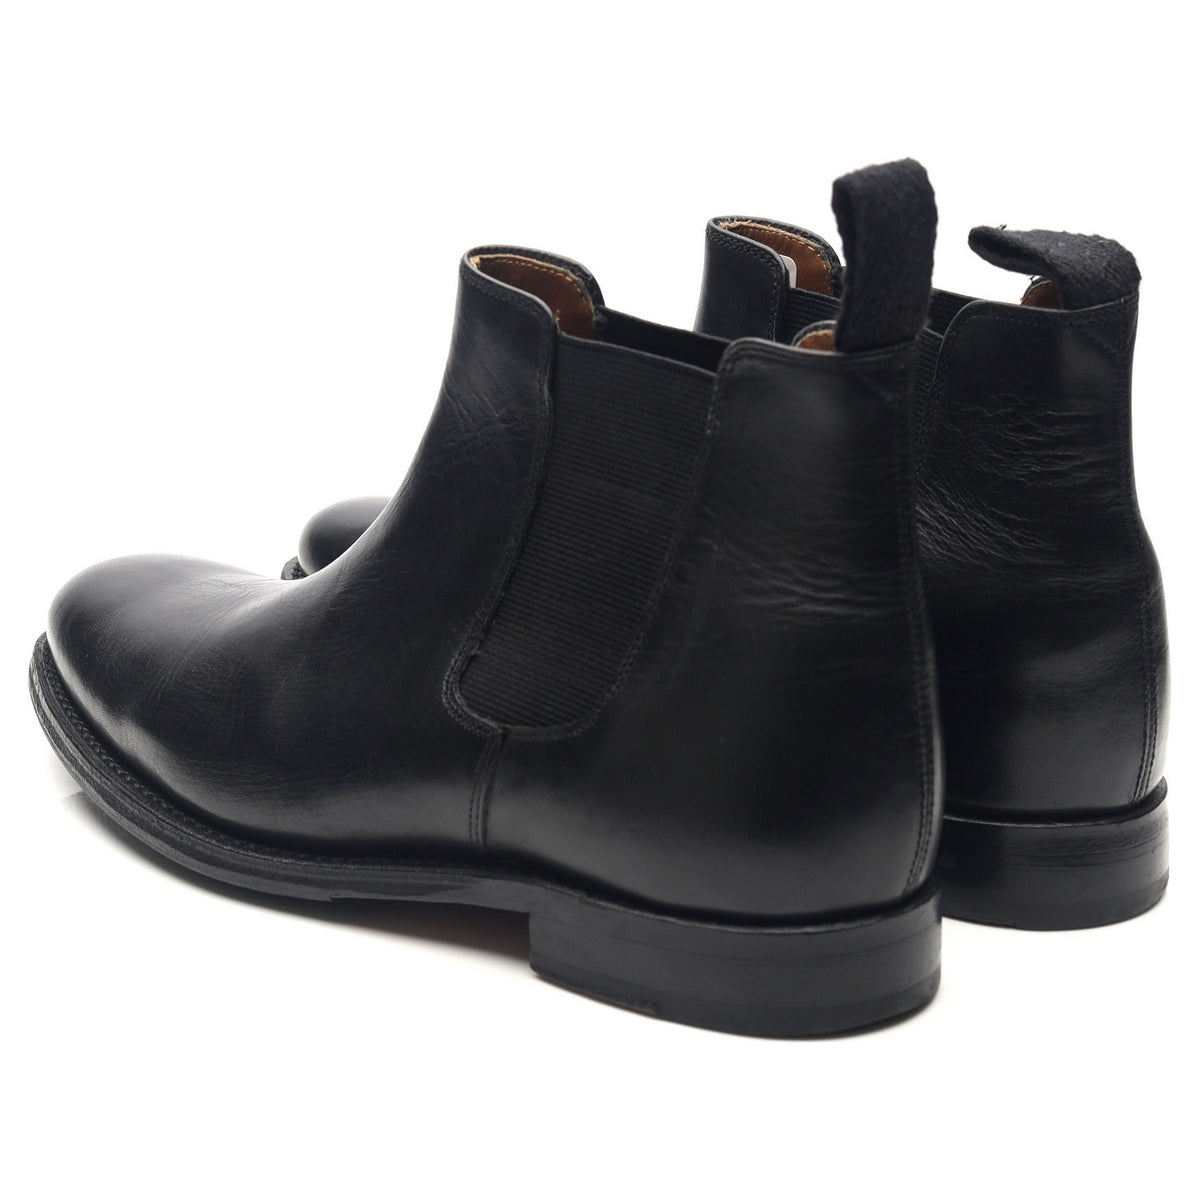 Women's 'Grace' Black Leather Chelsea Boots UK Shoes